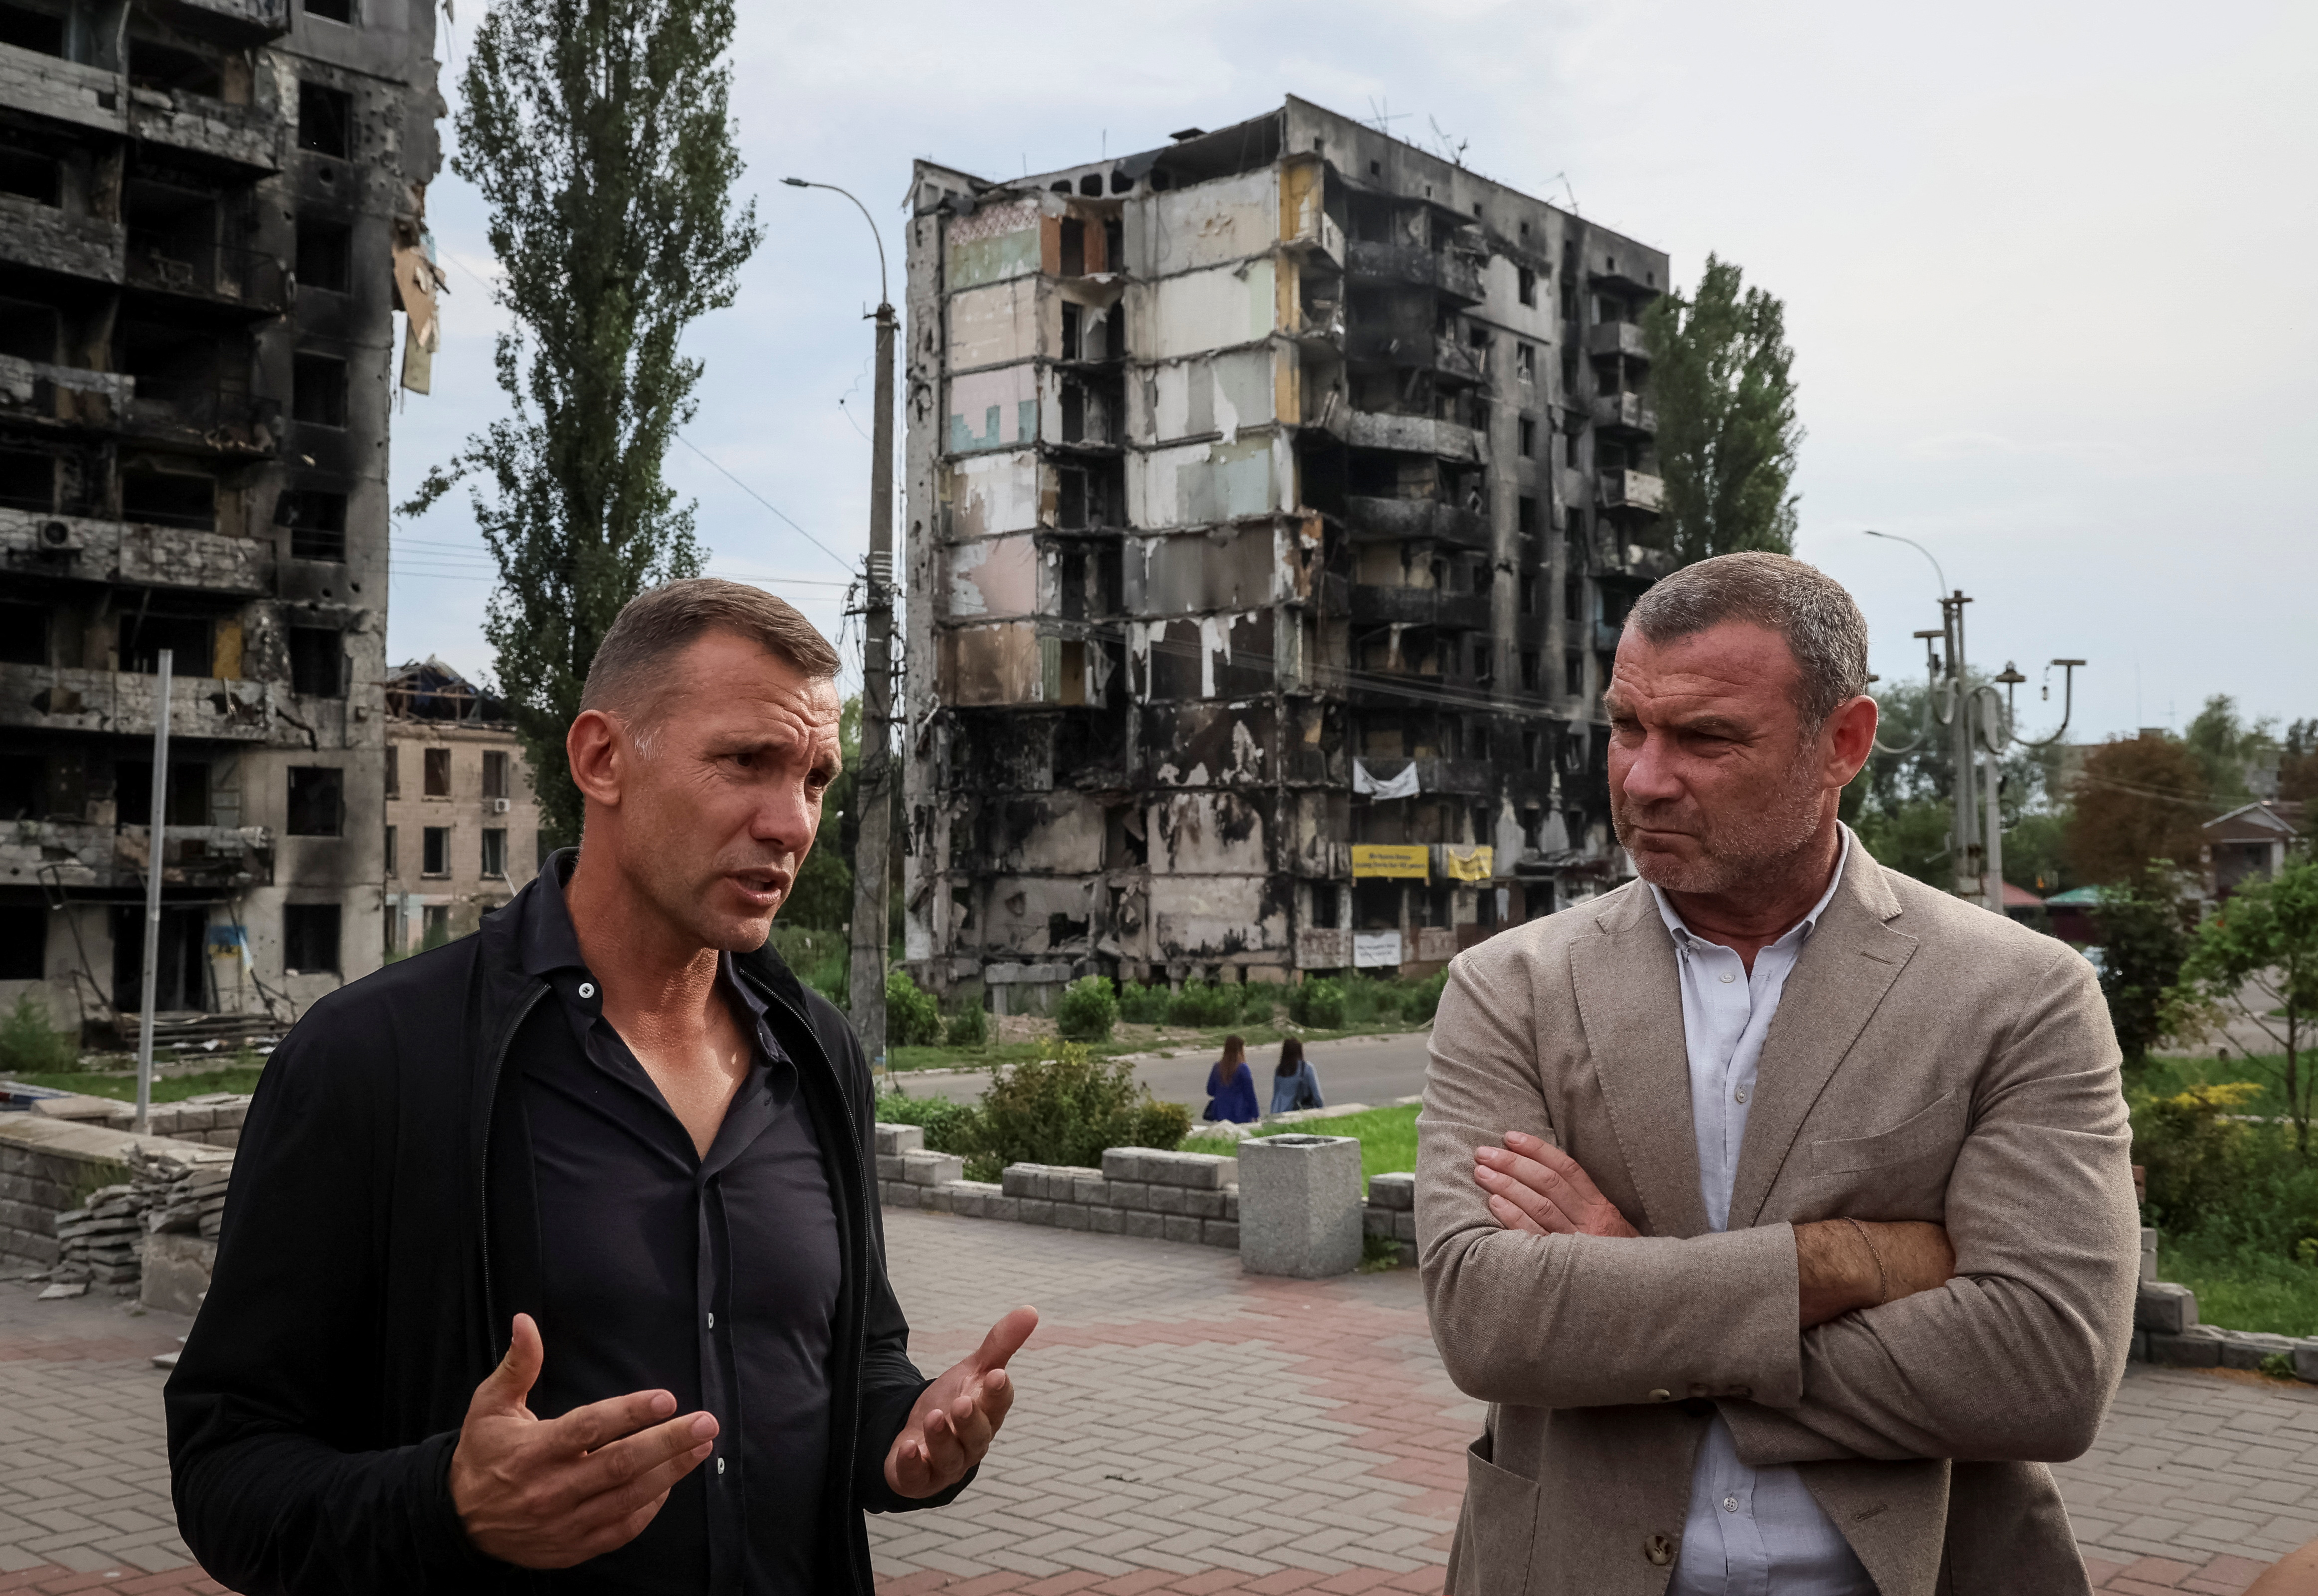 Shevchenko junto al actor Liev Schreiber en Borodianka, una de las ciudades afectadas por la invasión rusa (REUTERS/Gleb Garanich)